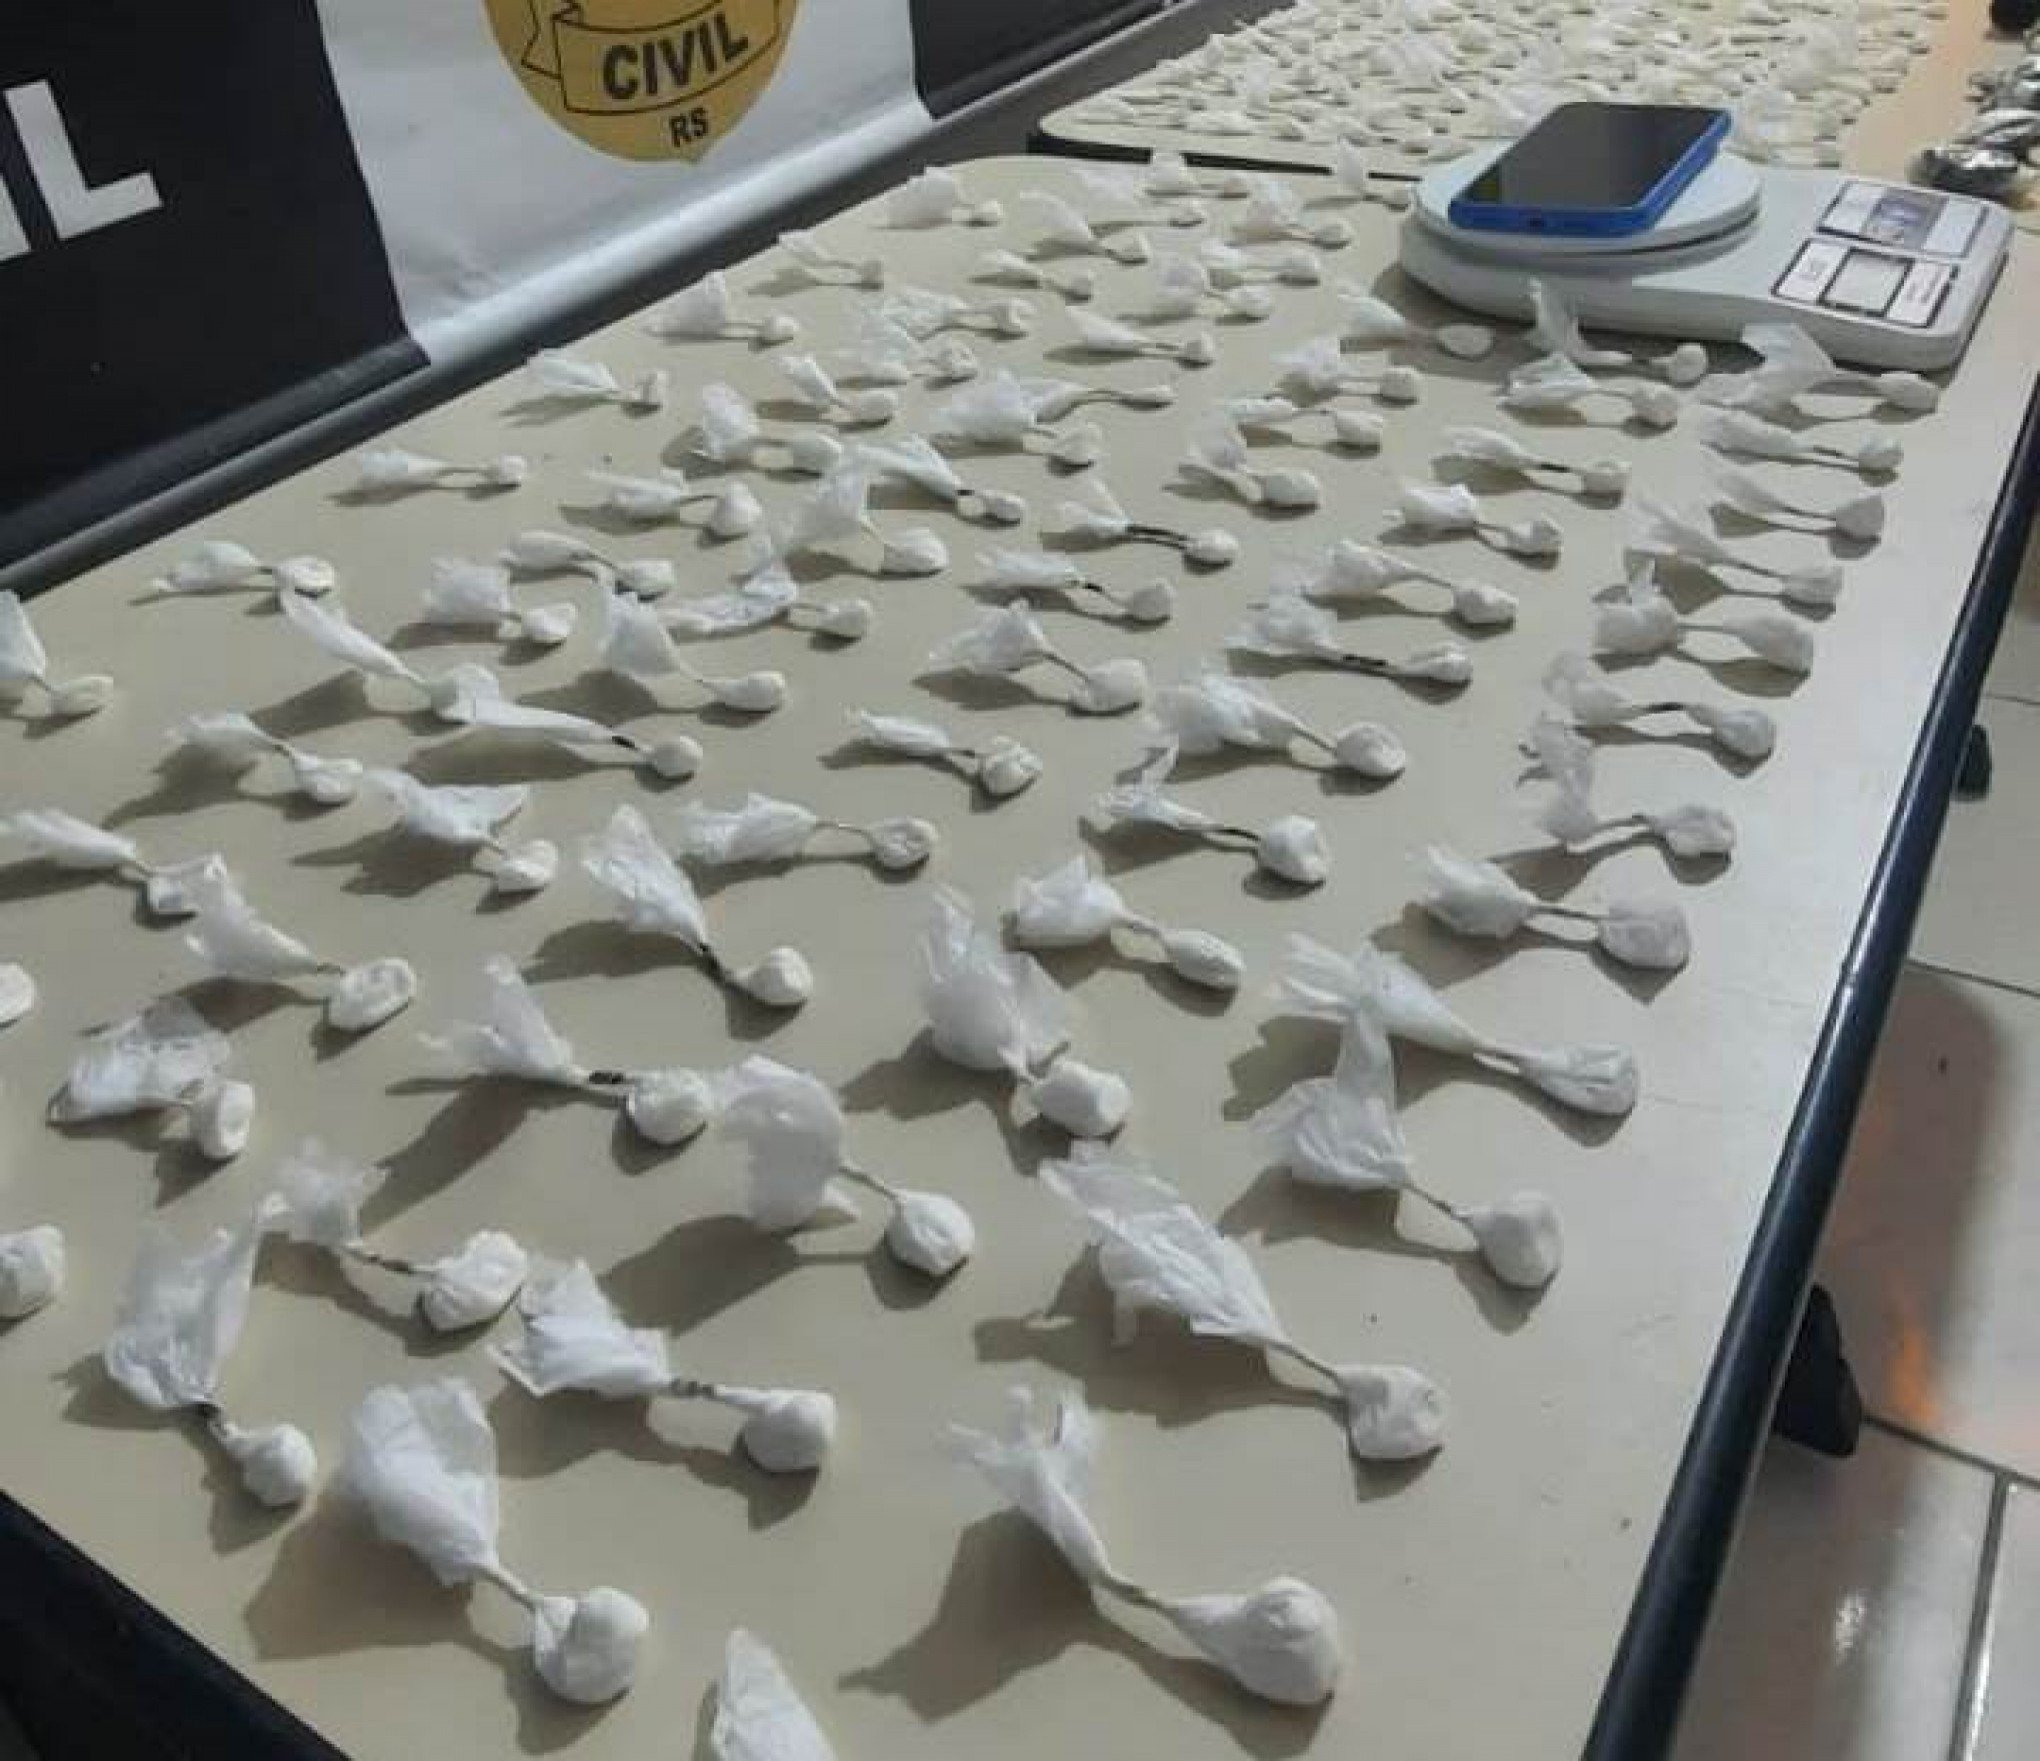 Mais de 160 buchas de cocaína e veículo são apreendidos em ação policial em Gramado